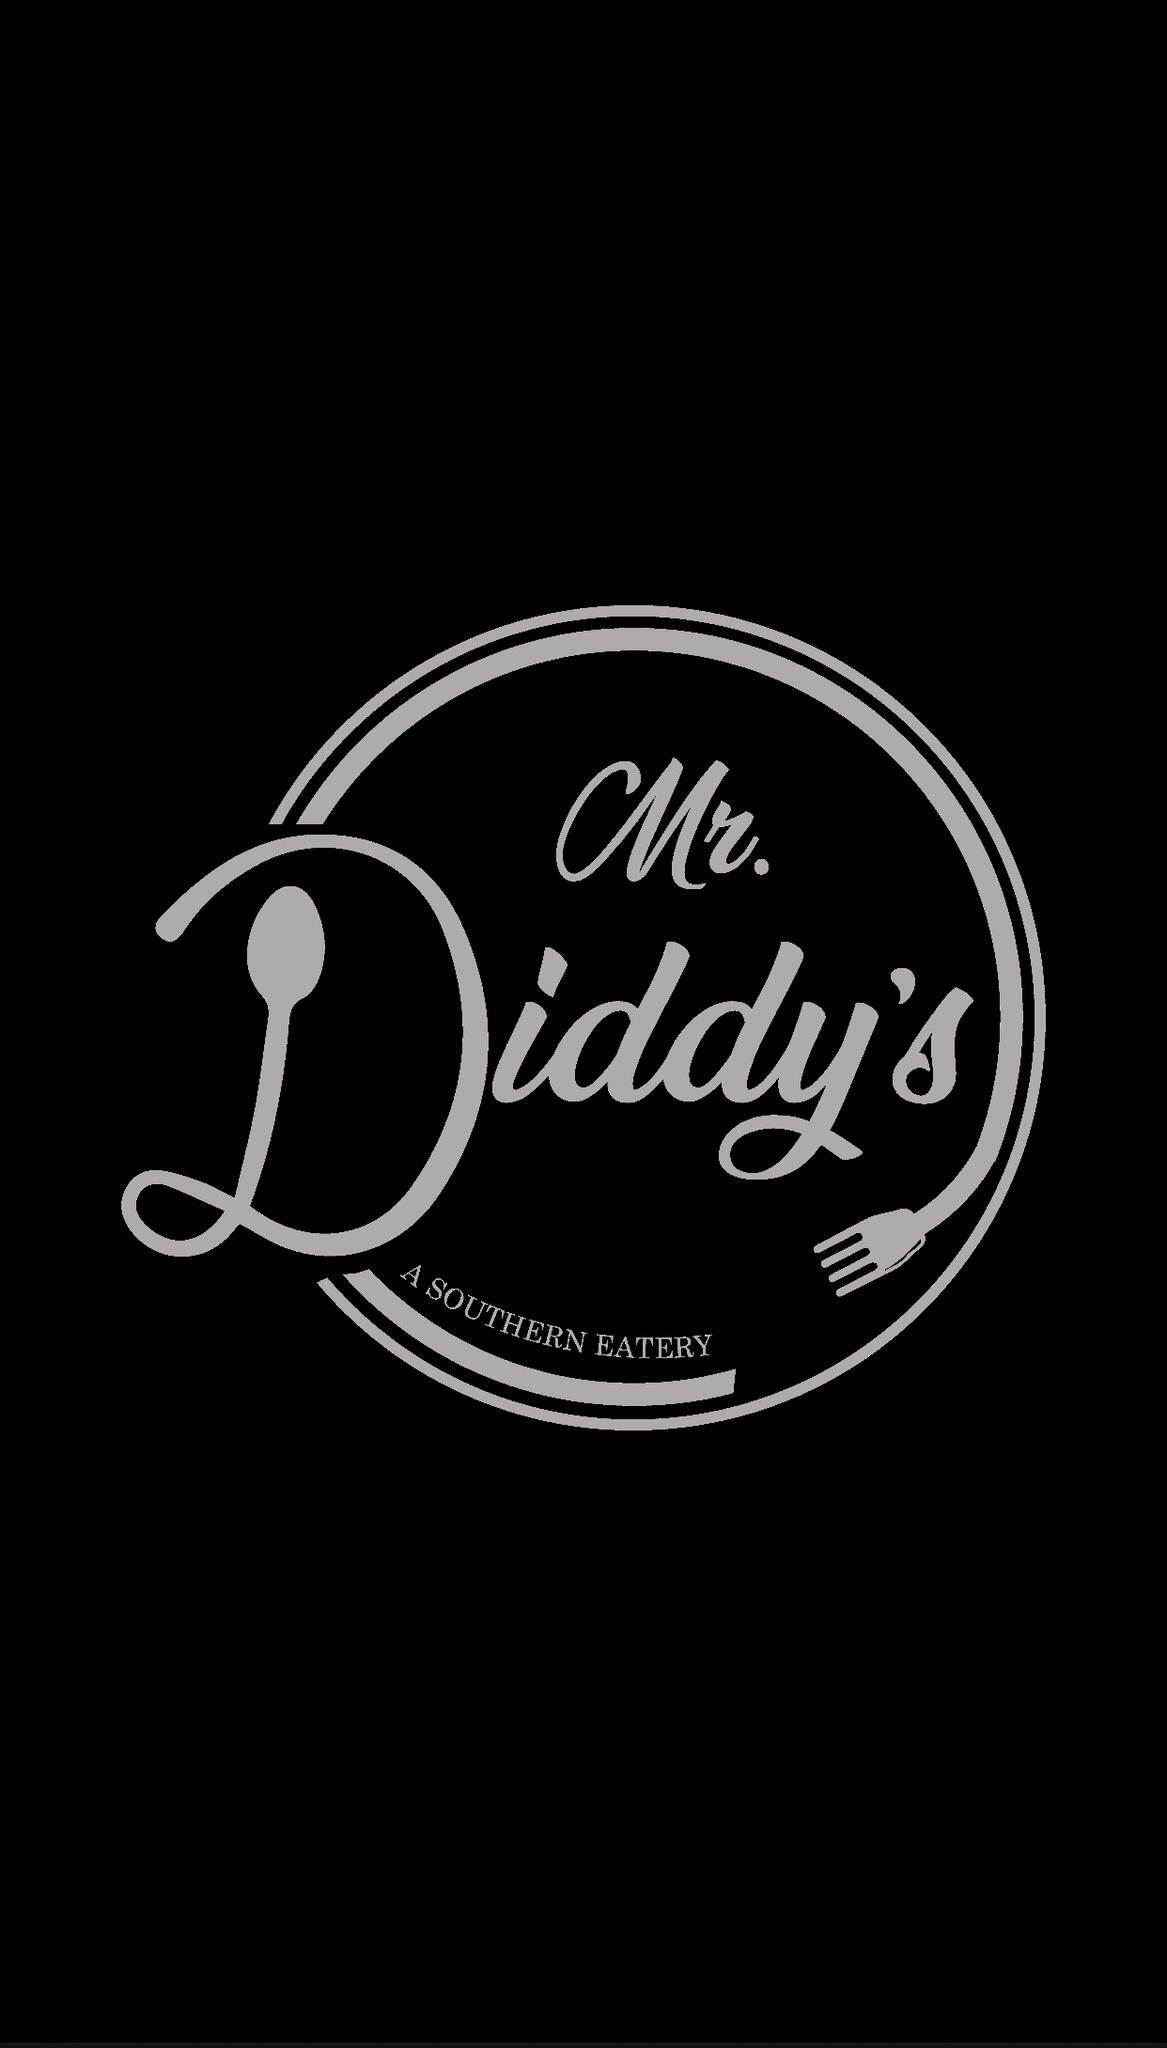 Mr. Diddy's